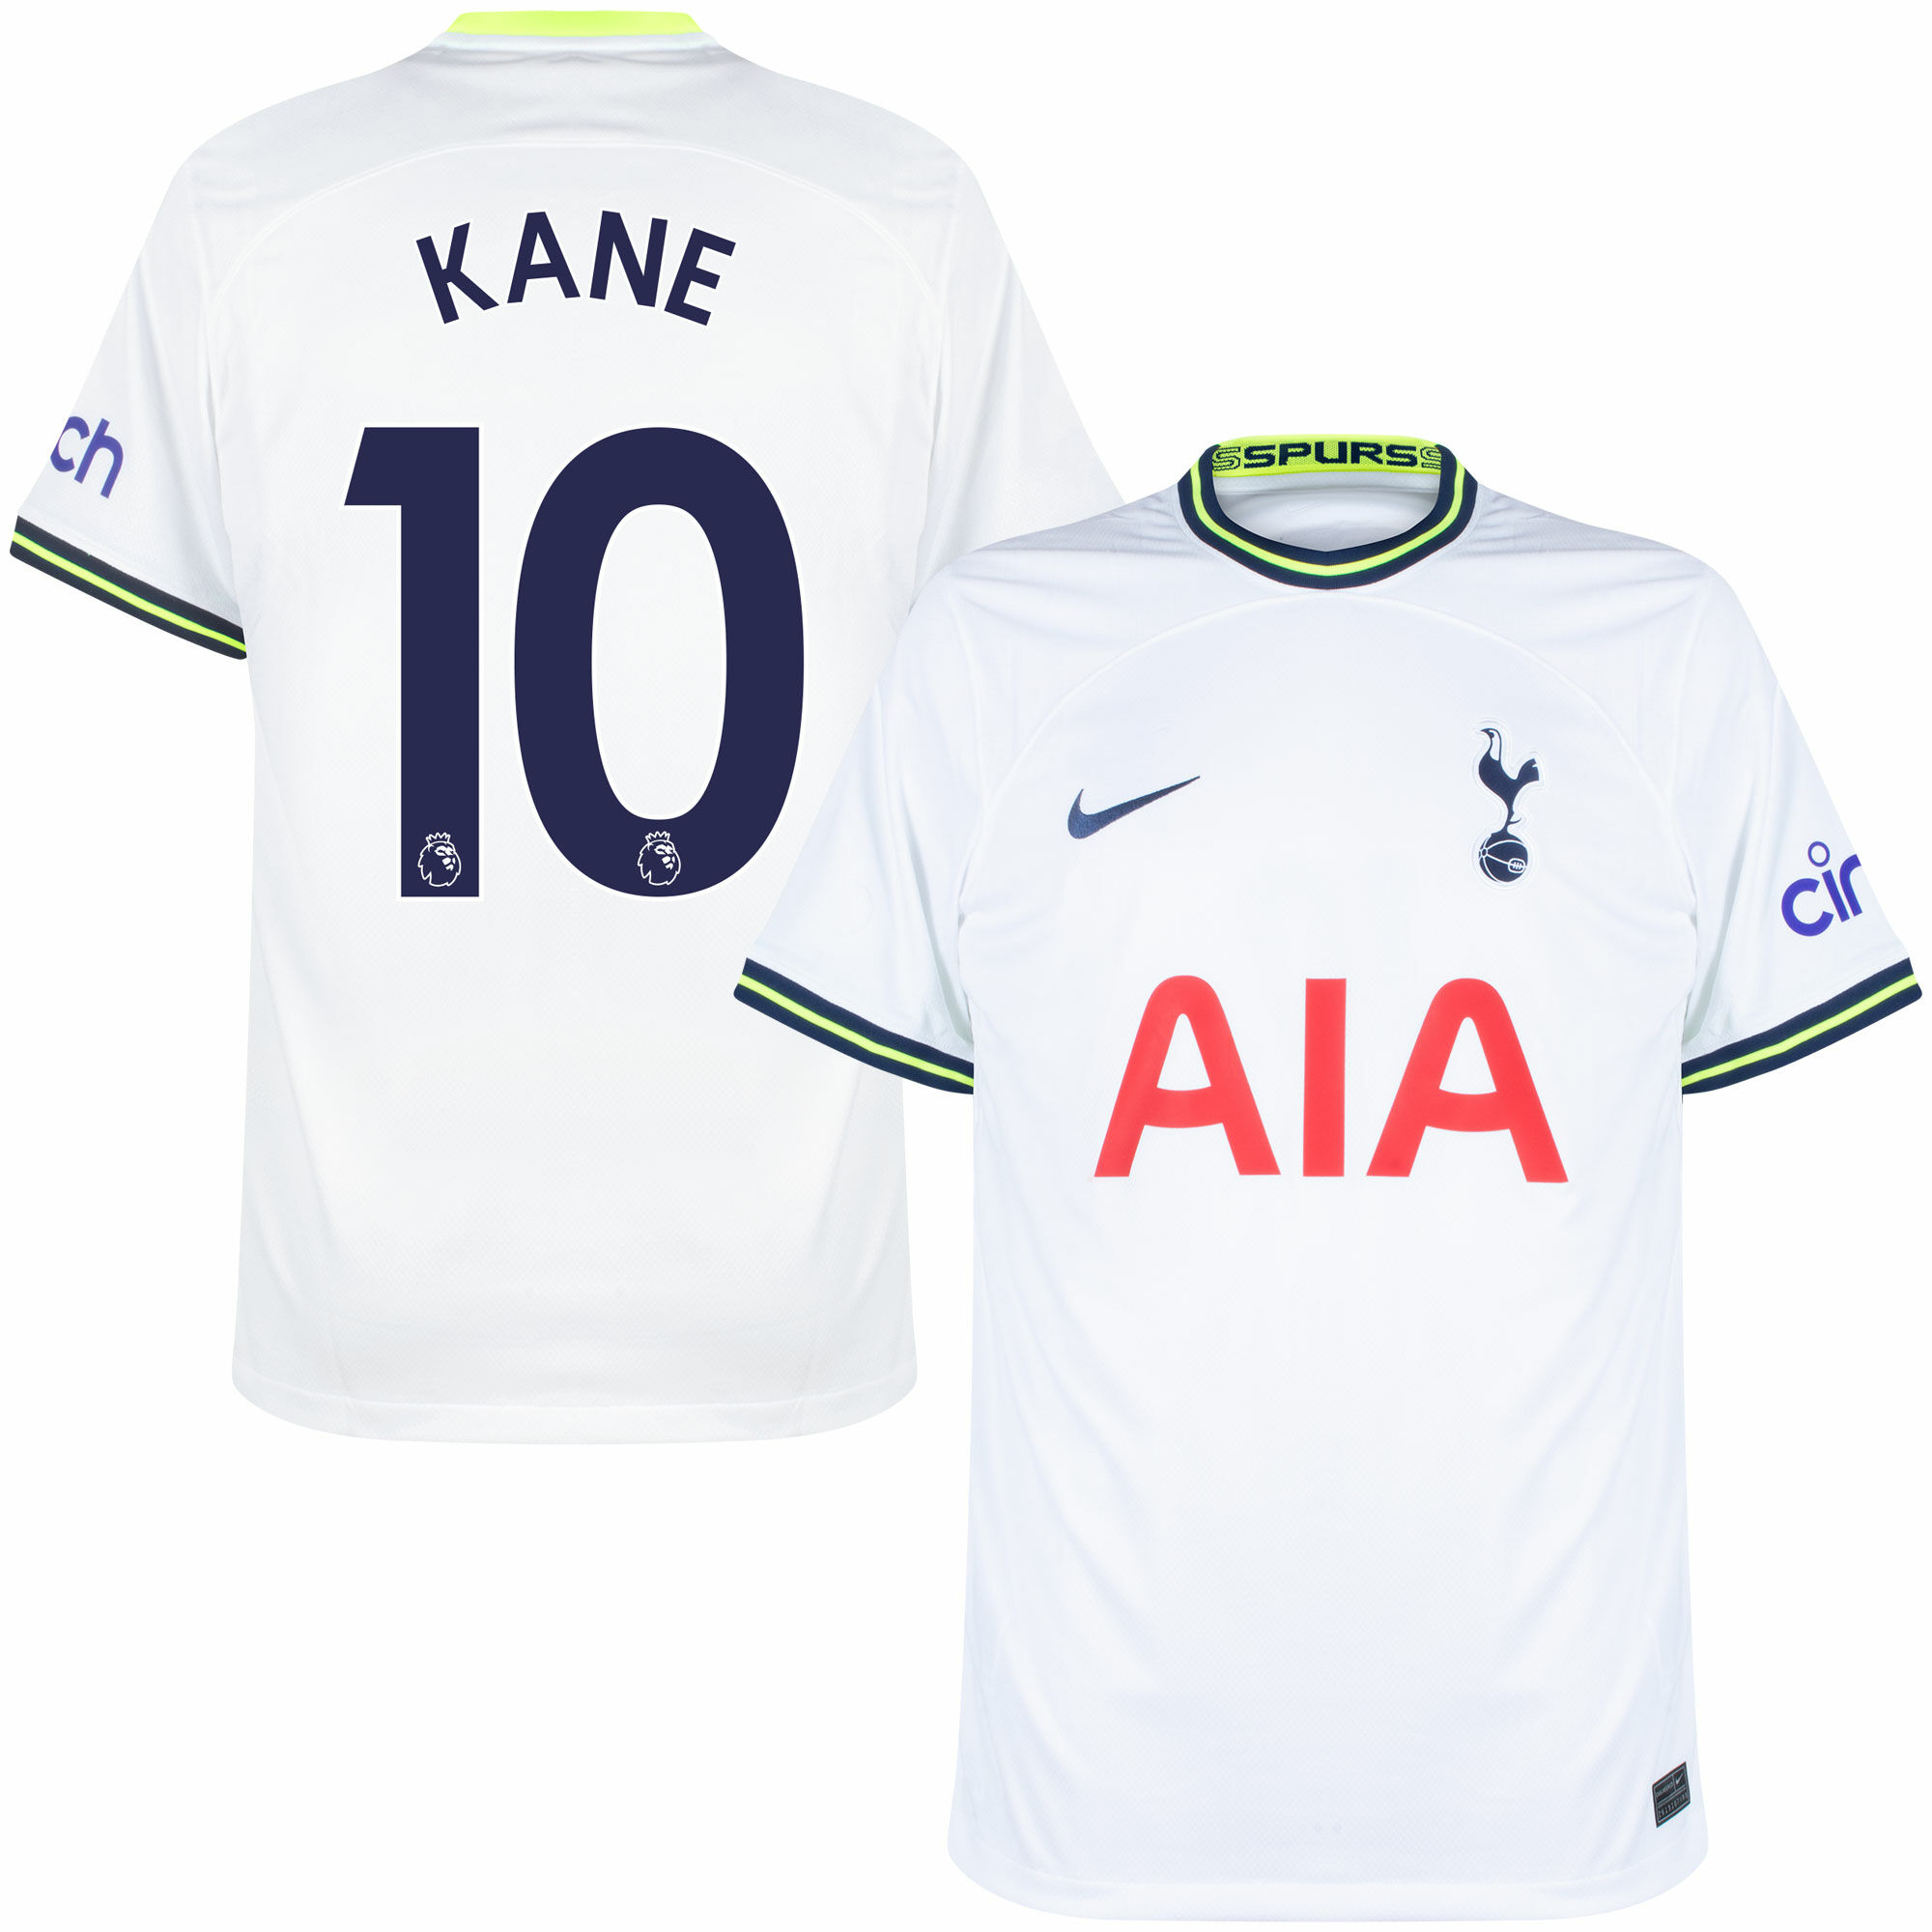 Tottenham Hotspur - Dres fotbalový - číslo 10, Premier League, domácí, bílý, sezóna 2022/23, Harry Kane